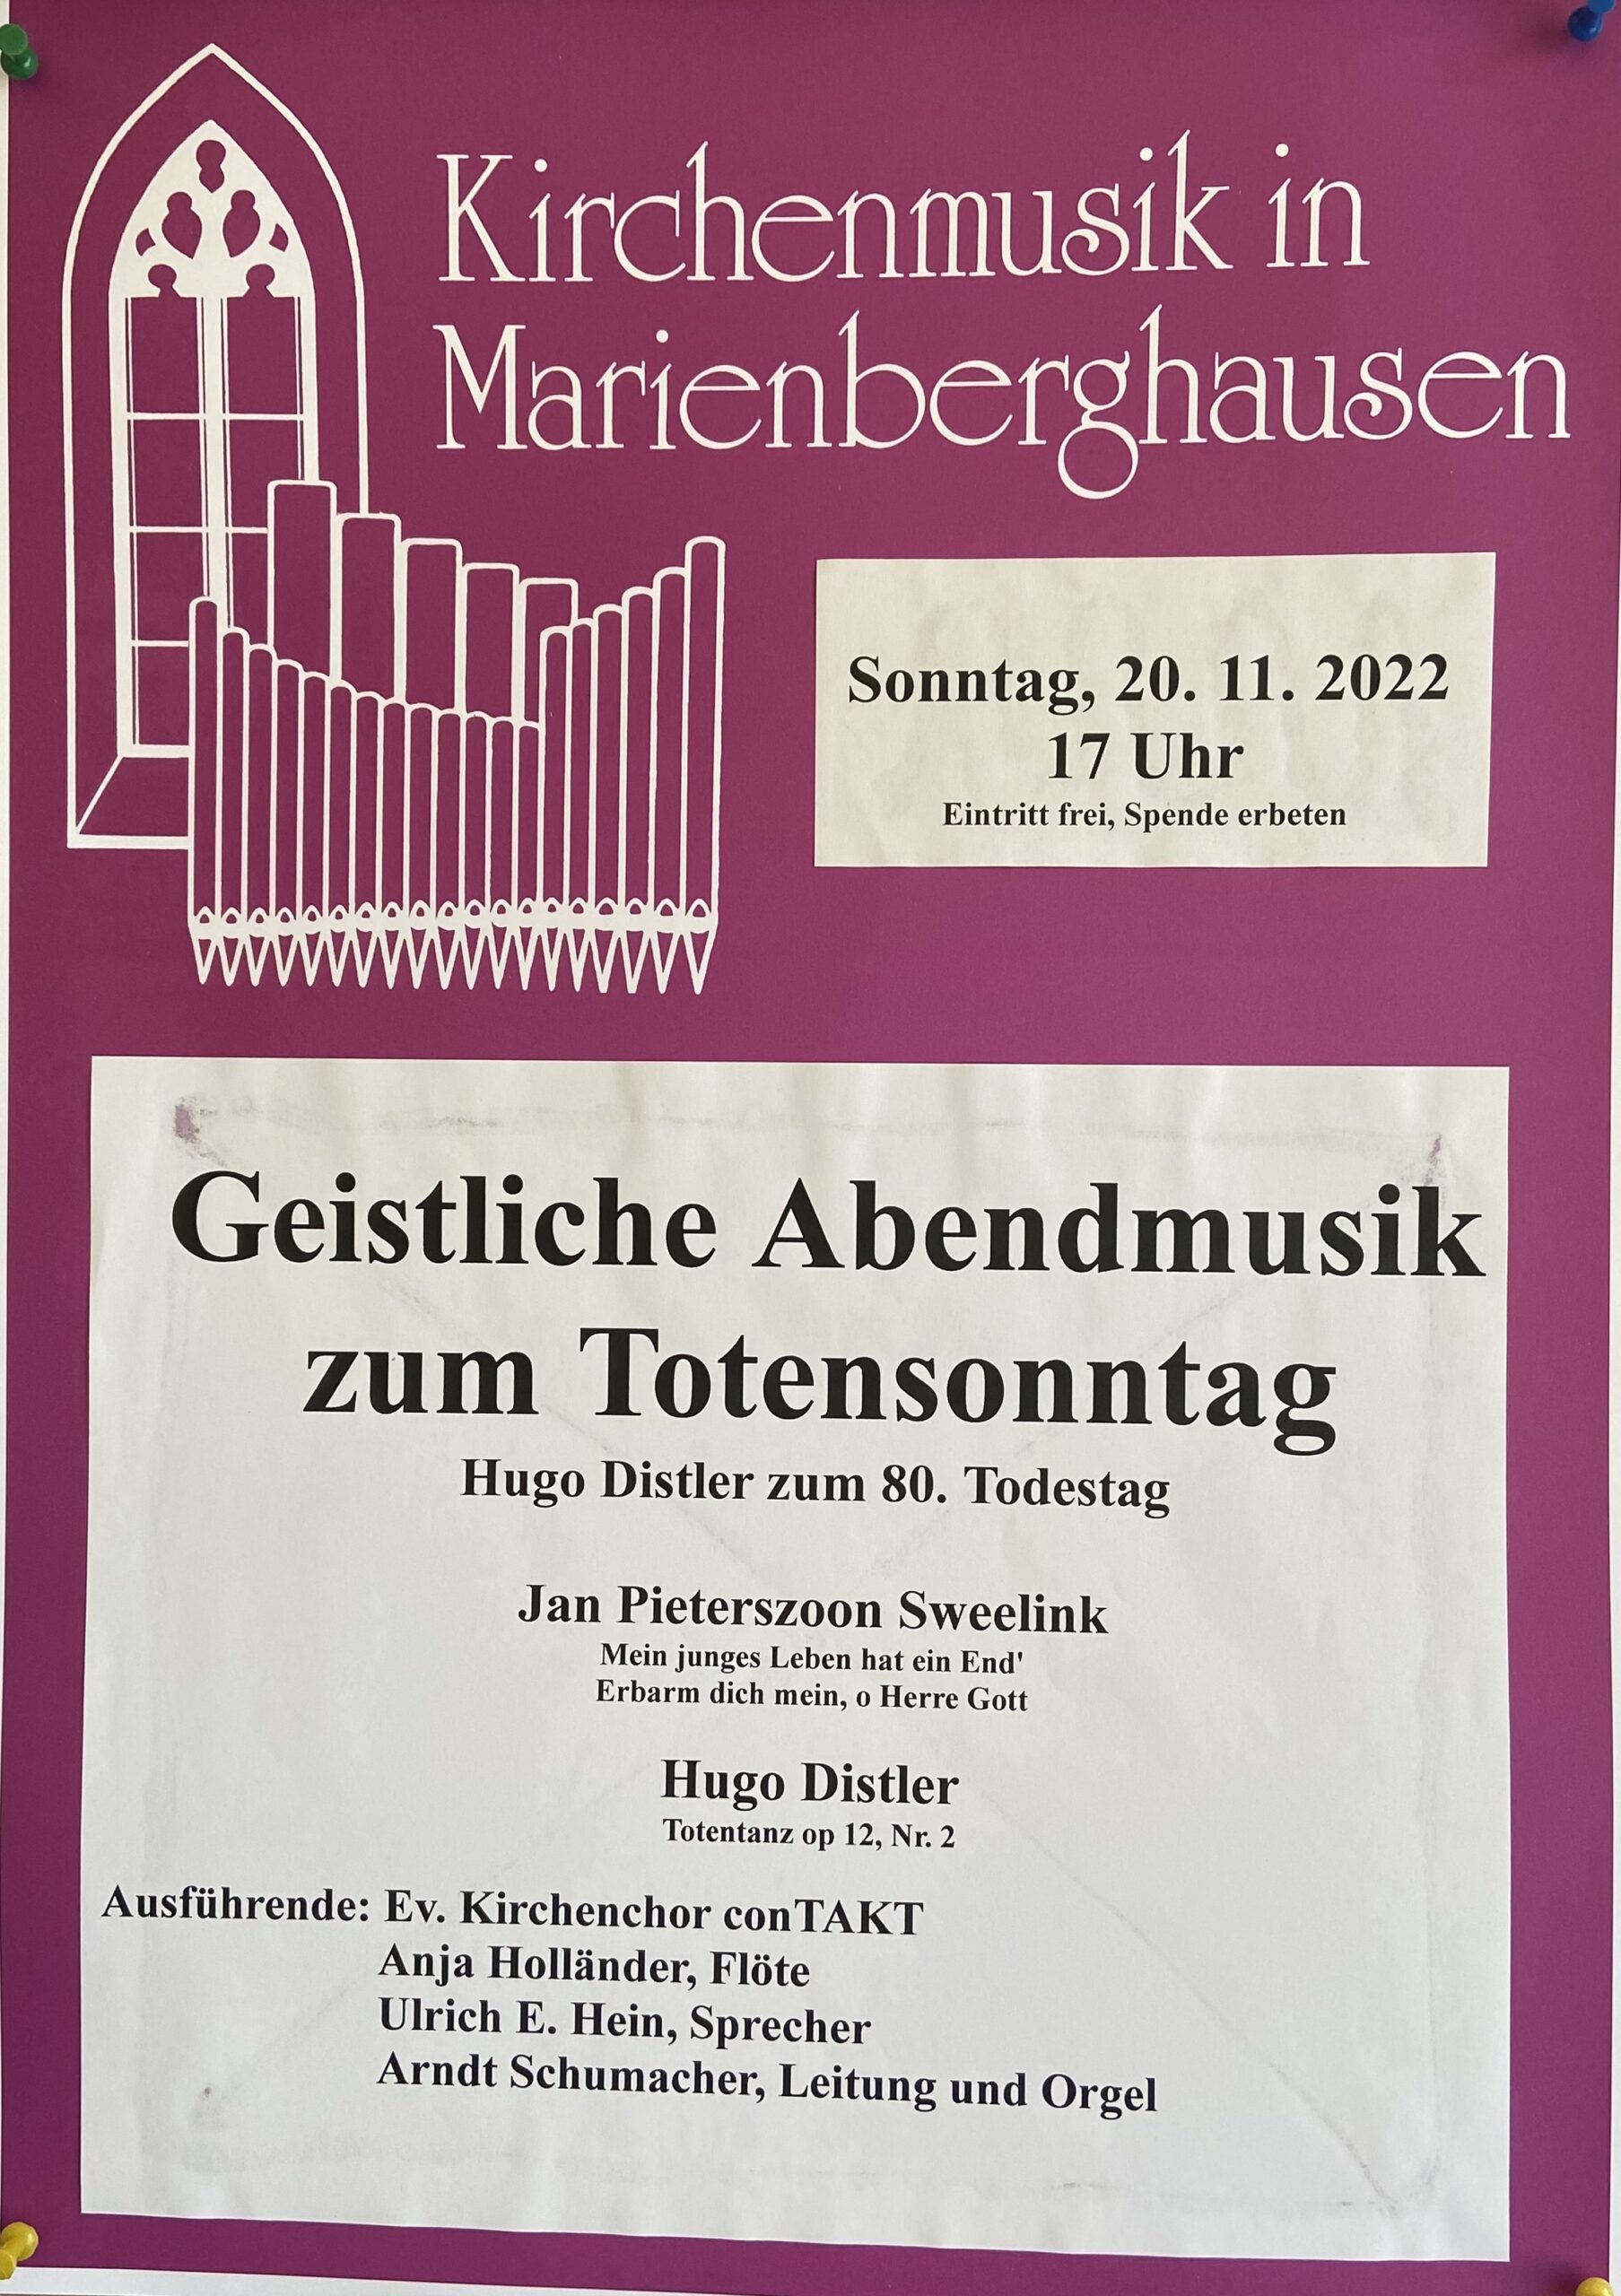 Herzliche Einladung zum Konzert unseres Kirchenchores „conTAKT“  am Totensonntag, 20. November 2022 um 17 Uhr in der Ev. Kirche in Marienberghausen